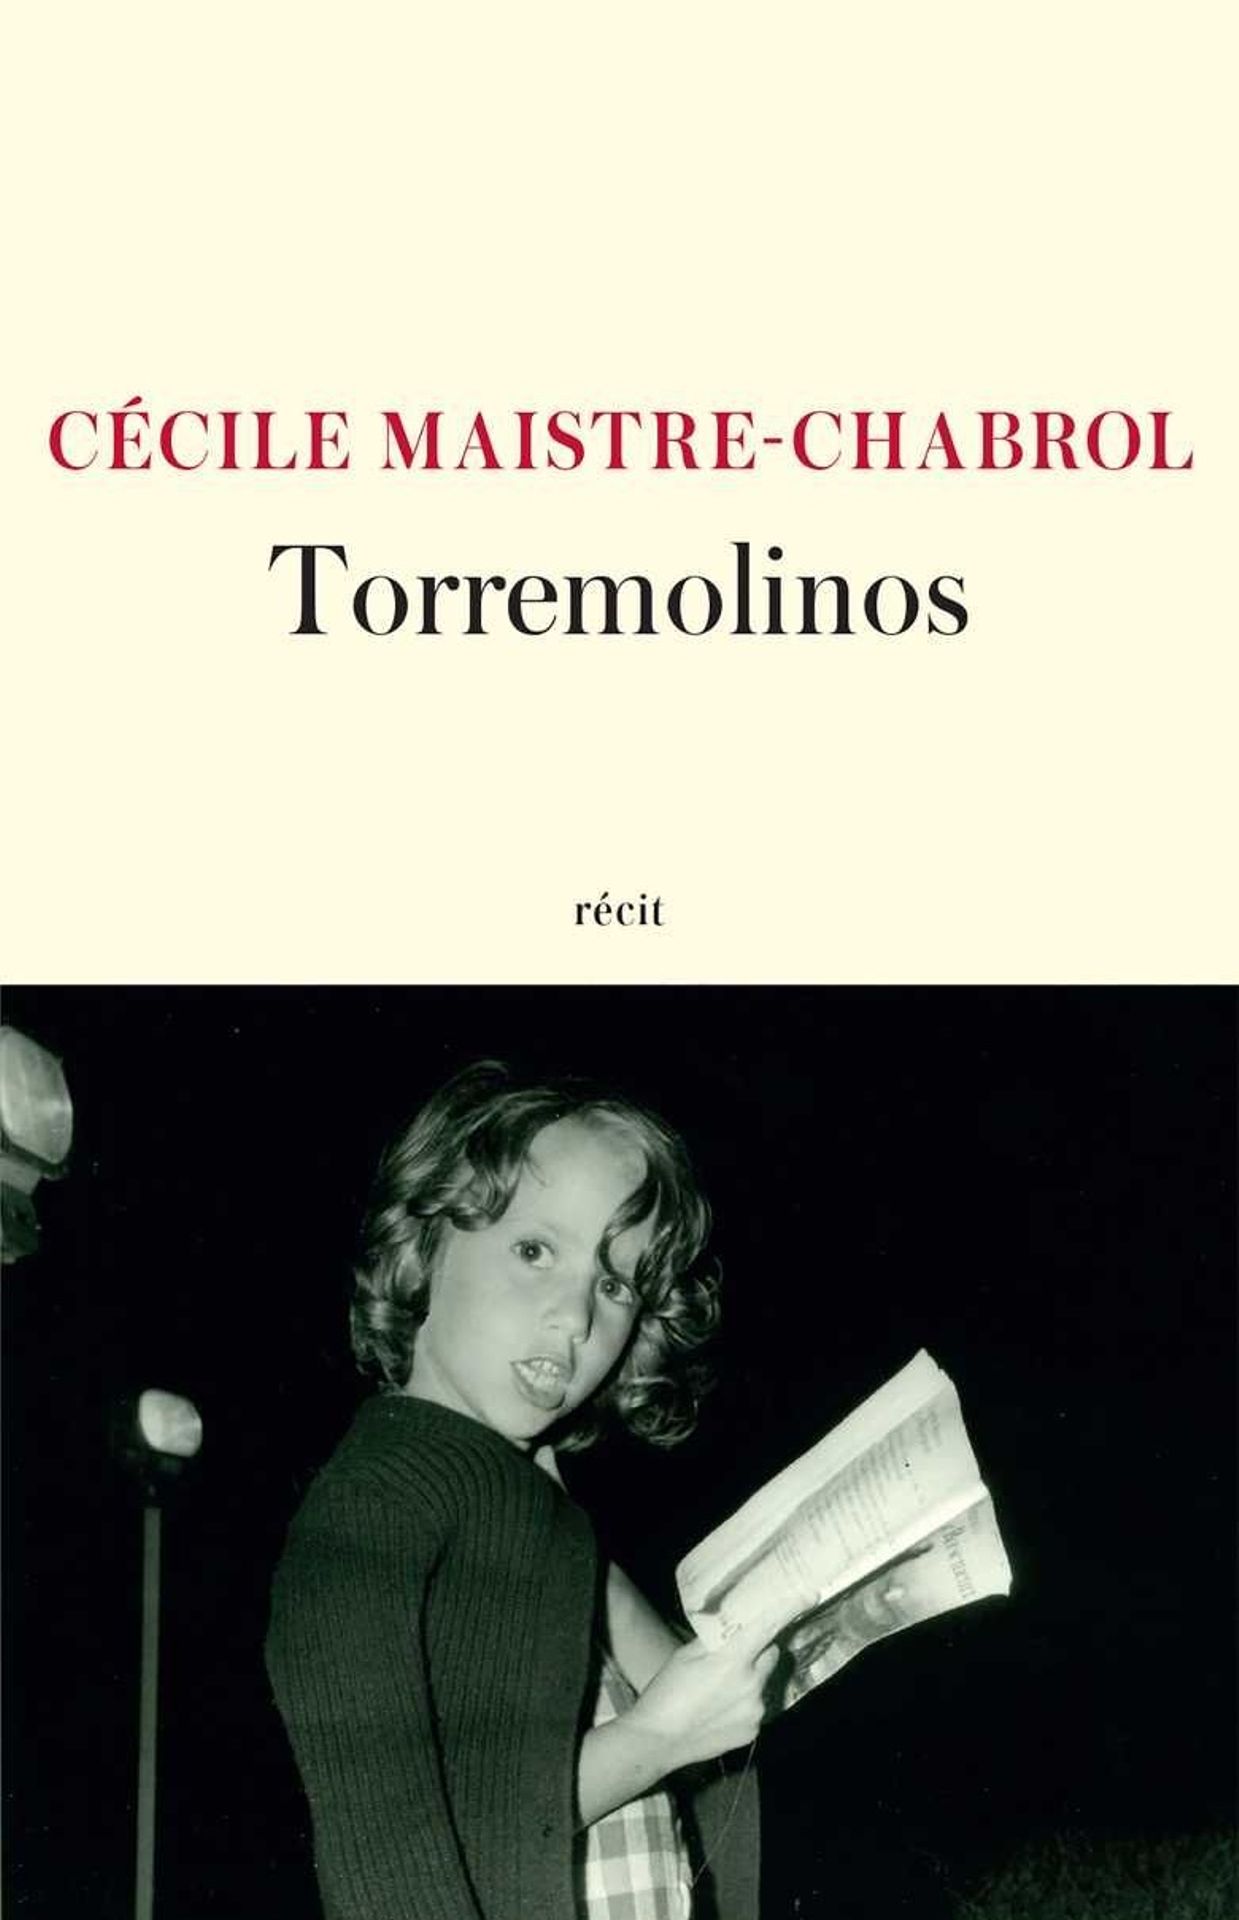 Première de couverture du roman "Torremolinos" de l’auteure Cécile Maistre – Chabrol.